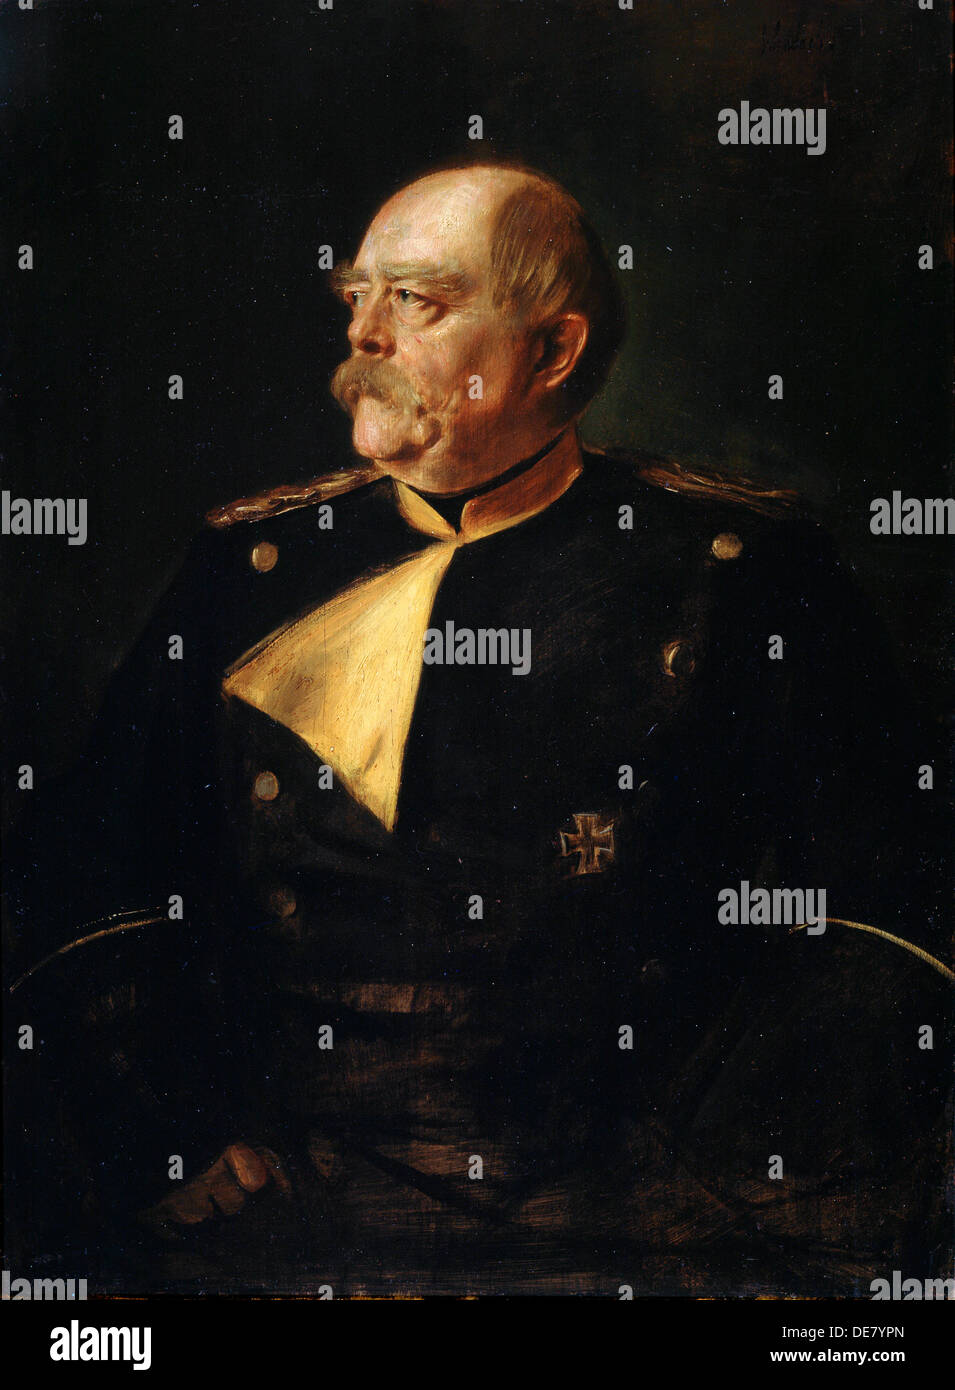 Portrait of Chancellor Otto von Bismarck in Uniform', (1815-1898), 19th century. Stock Photo